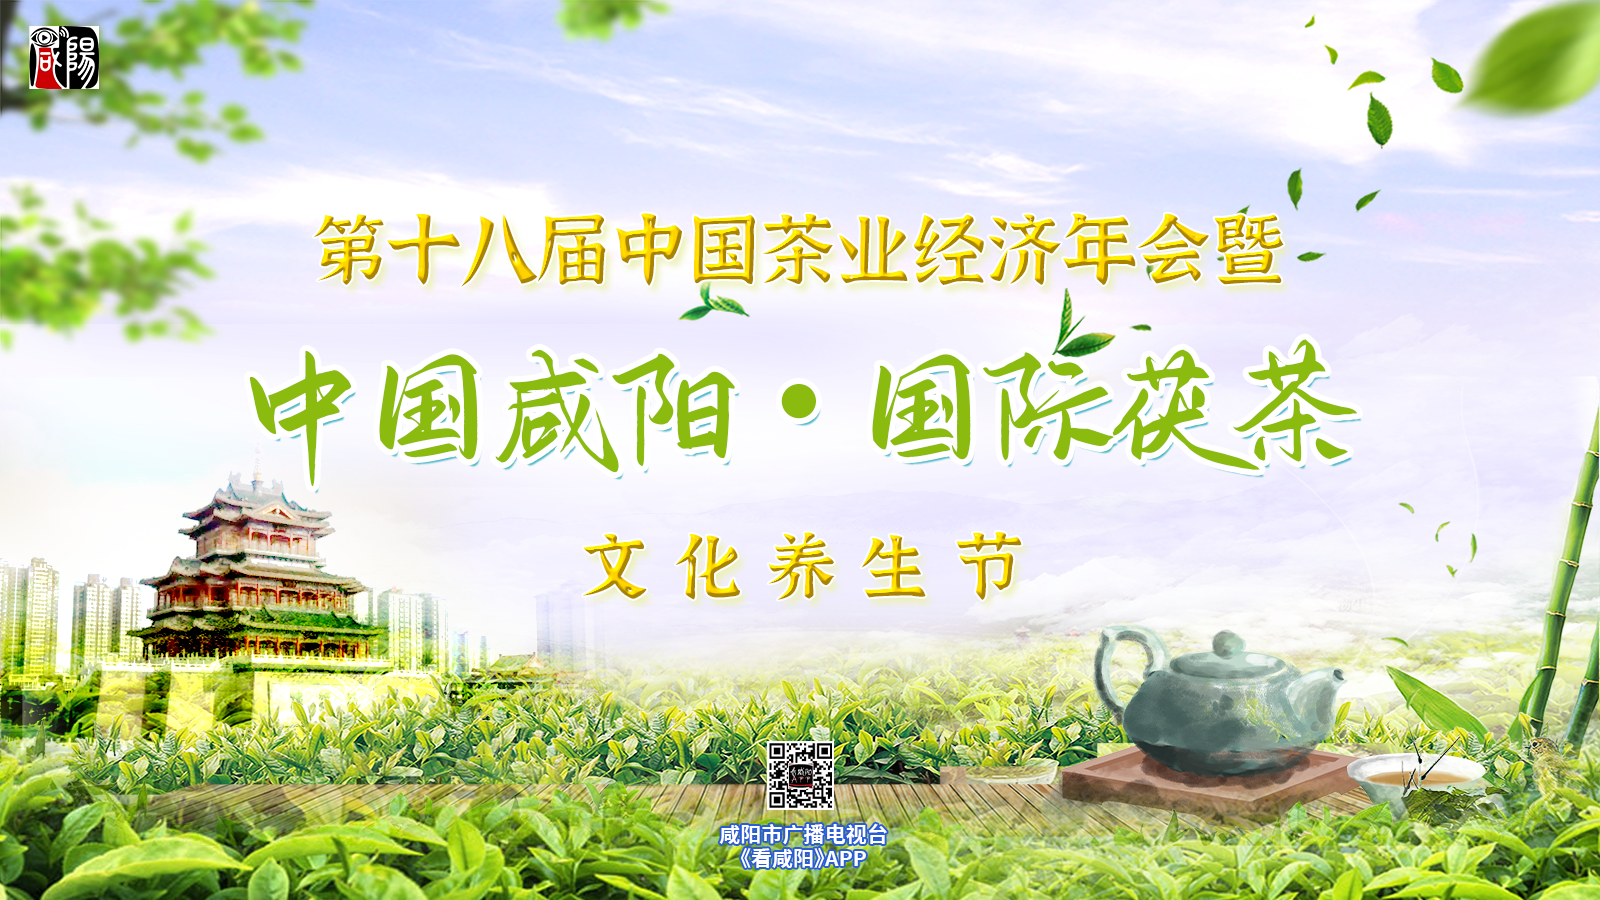 【直播回看】“第十八屆中國茶業經濟年會暨中國咸陽·國際茯茶文化養生節”新聞發布會